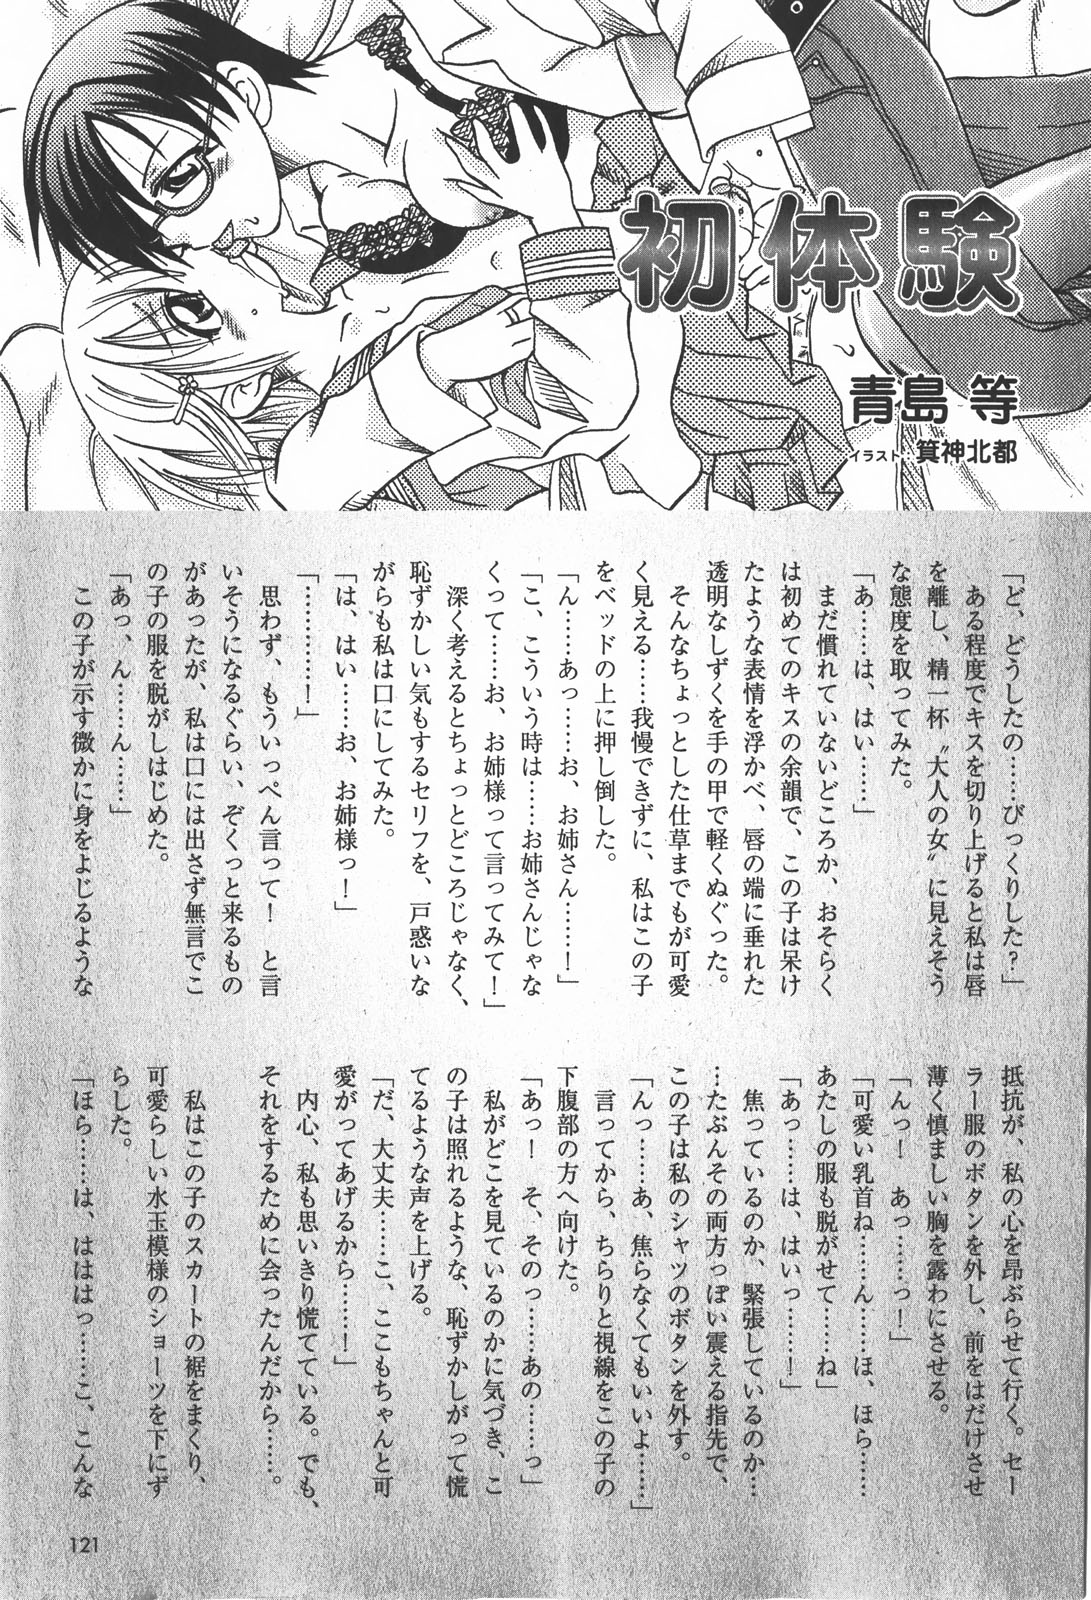 コミック嵐王 らんおう Vol.2